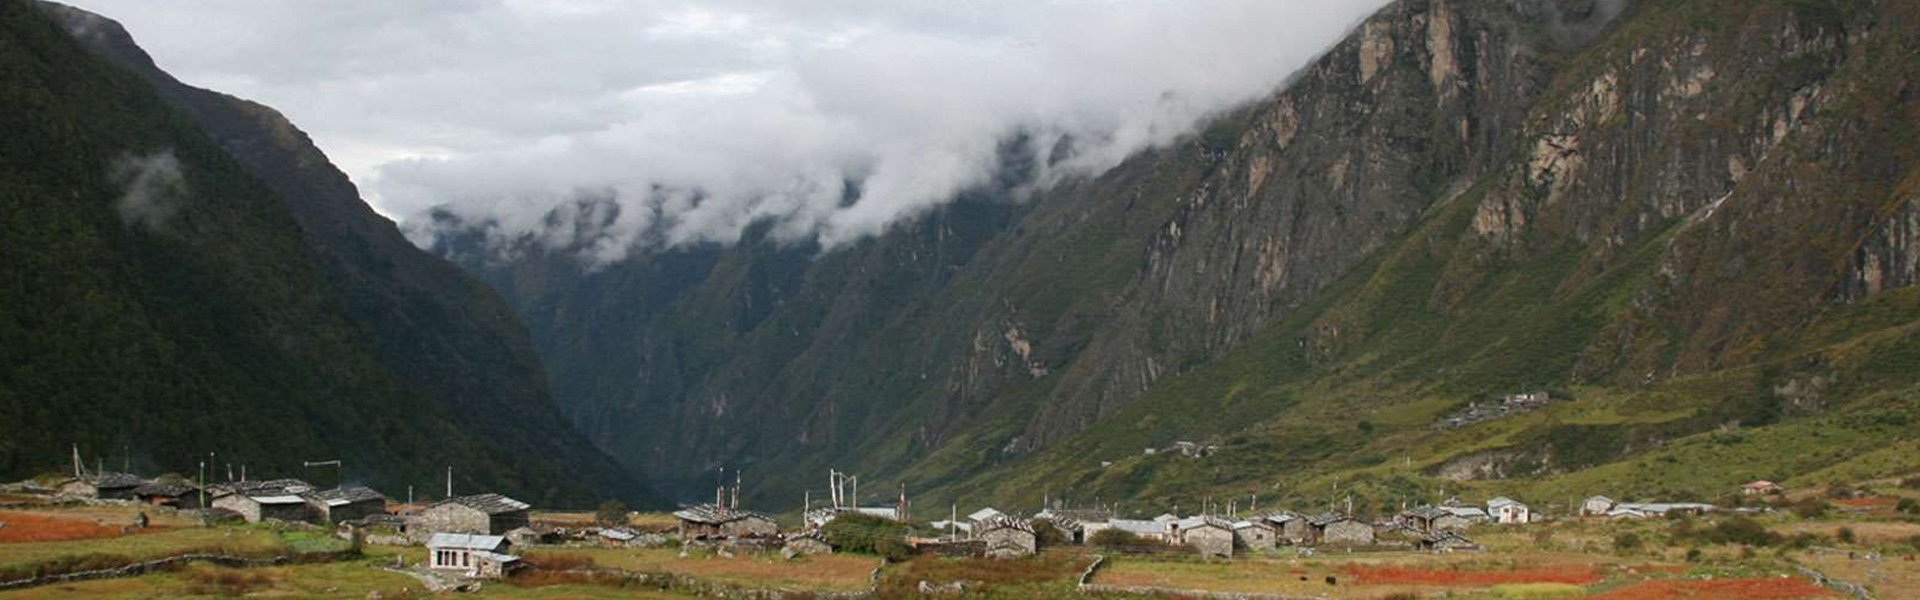 How difficult is Langtang Valley Trek